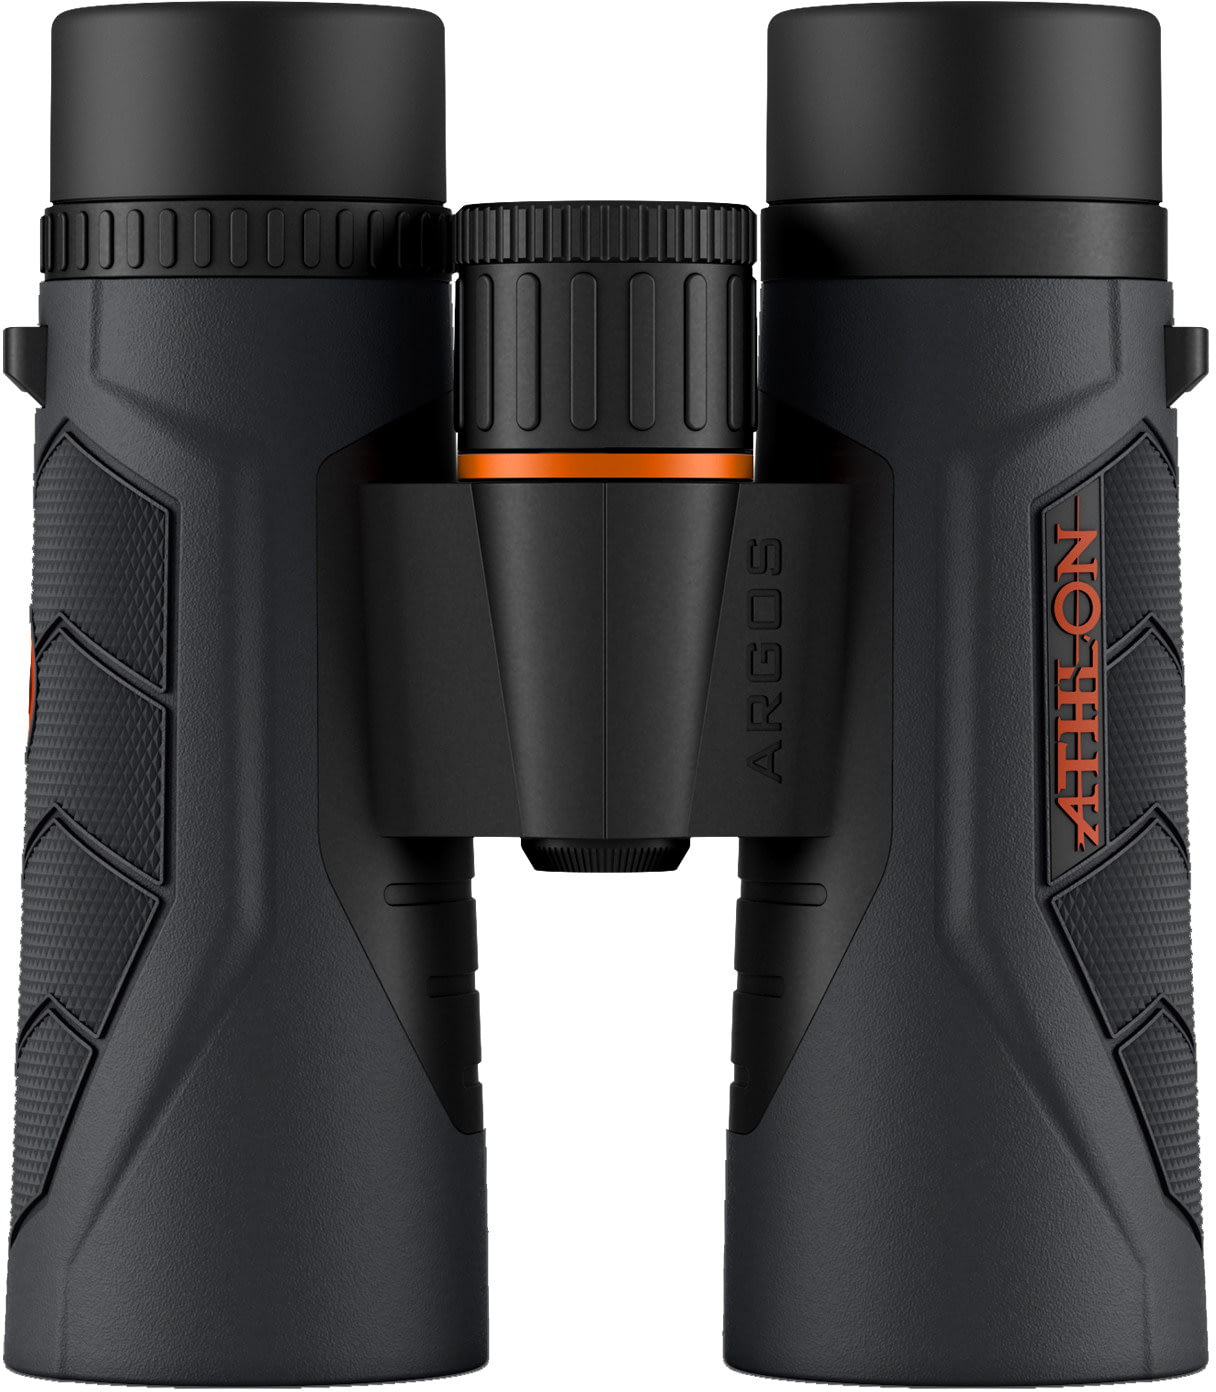 Athlon Optics Argos Gen II UHD 8x42mm Roof Prism Binoculars Black : 114012